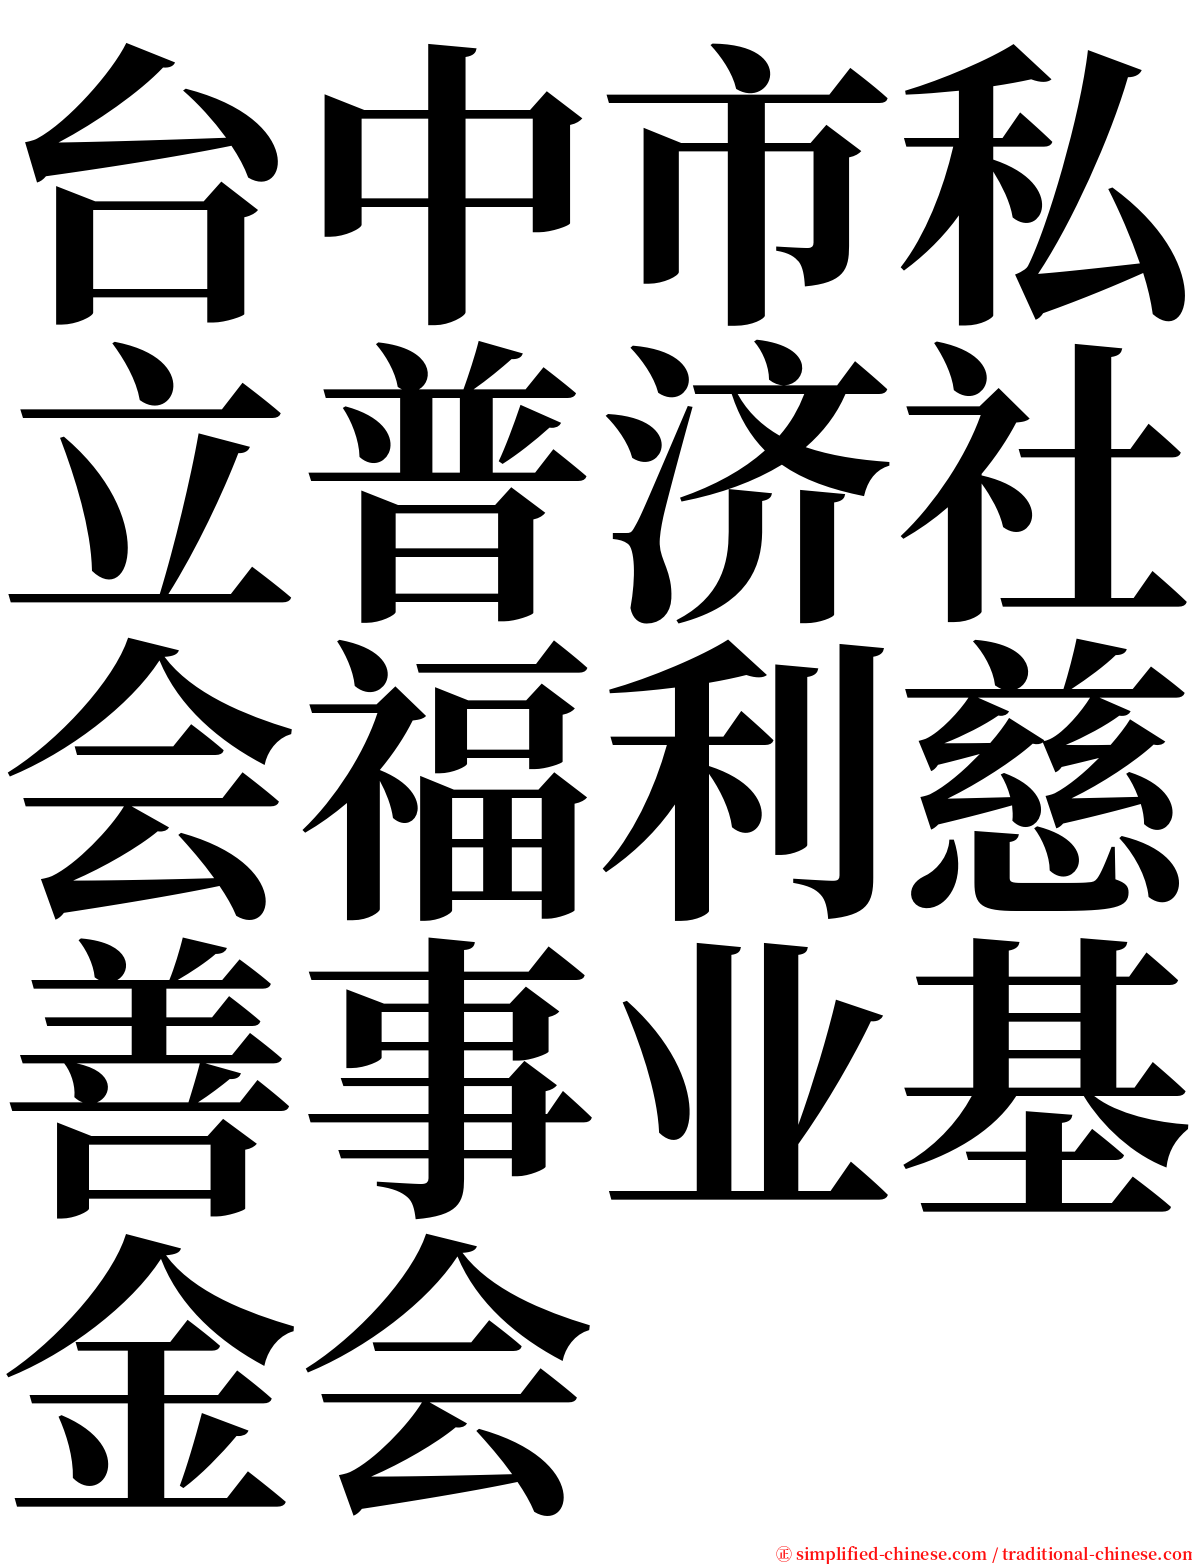 台中市私立普济社会福利慈善事业基金会 serif font